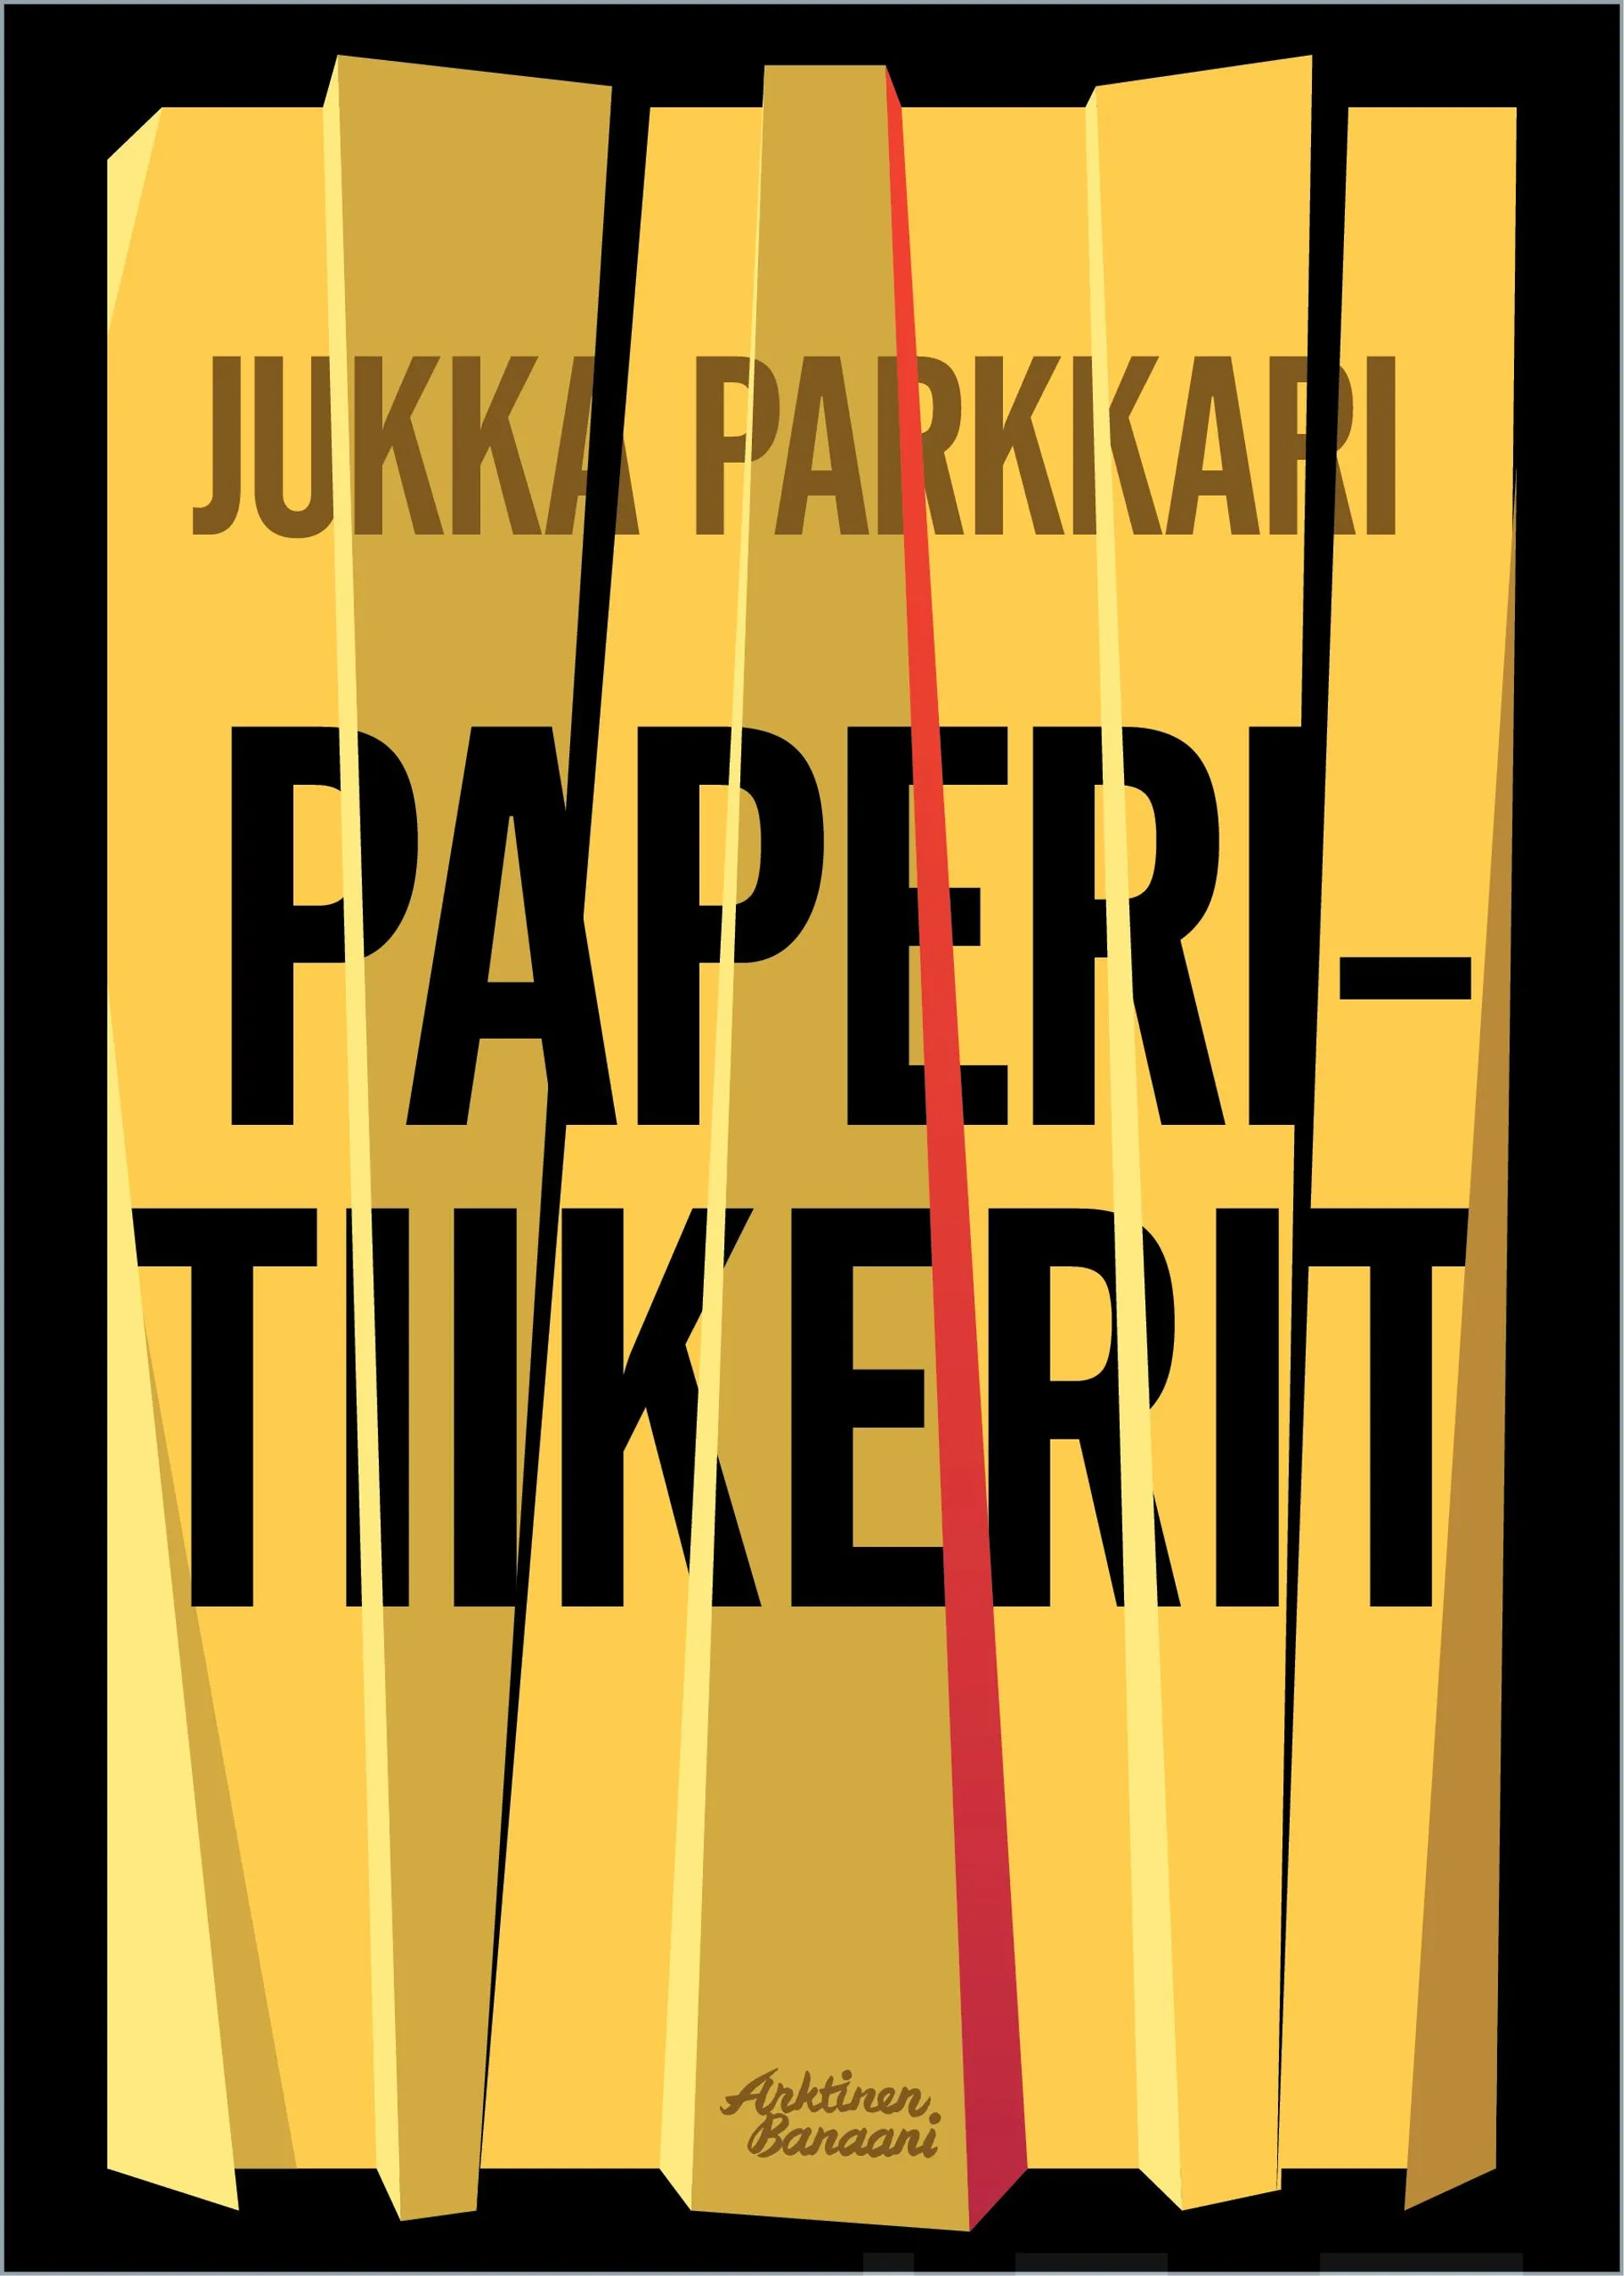 Parkkari, Paperitiikerit - Romaani vakoilusta ja vastavakoilusta Suomessa vuosina 2005-2006